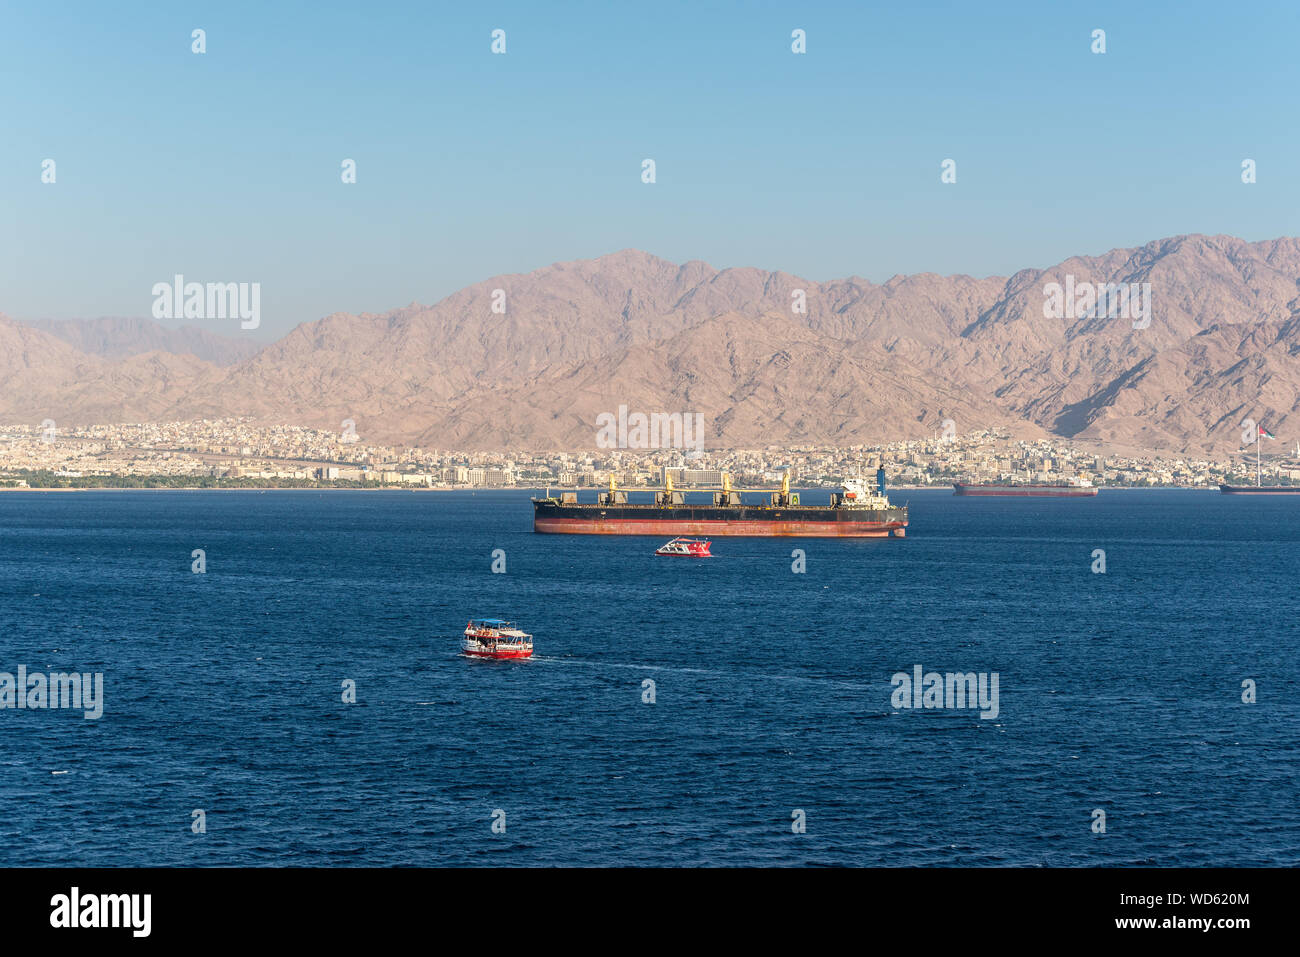 Eilat, Israël - 7 novembre 2017 : La vue de port marchand d'Eilat en Israël sur les montagnes jordaniennes et les navires ancrés au golfe d'Aqaba (mer Rouge). T Banque D'Images